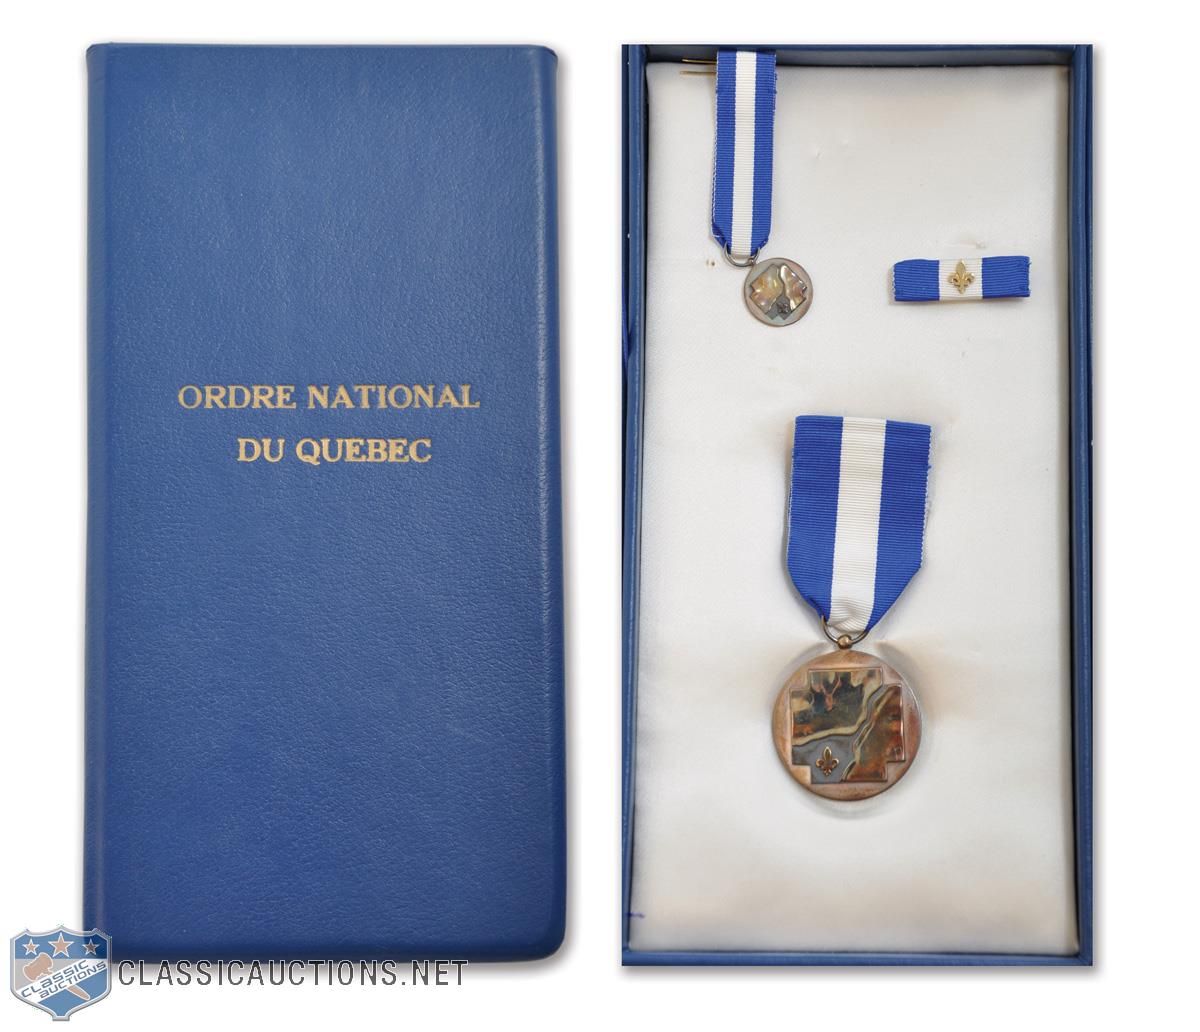 Image of Paire de badges de poitrine de médailles : l'Ordre royal  guelphique